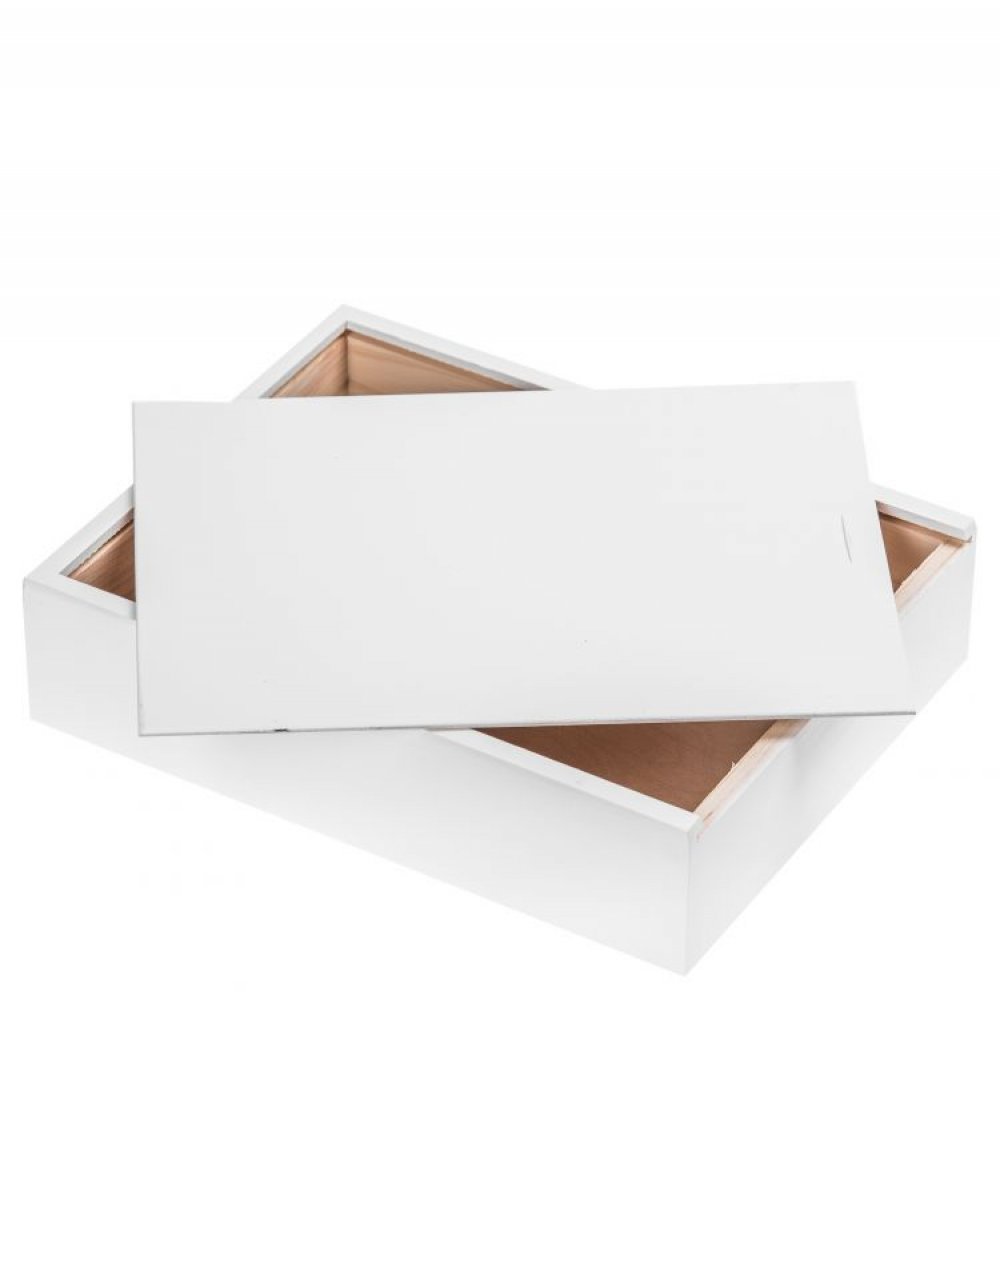 Víceúčelový dřevěný box 27x21x6 cm, barva bílá